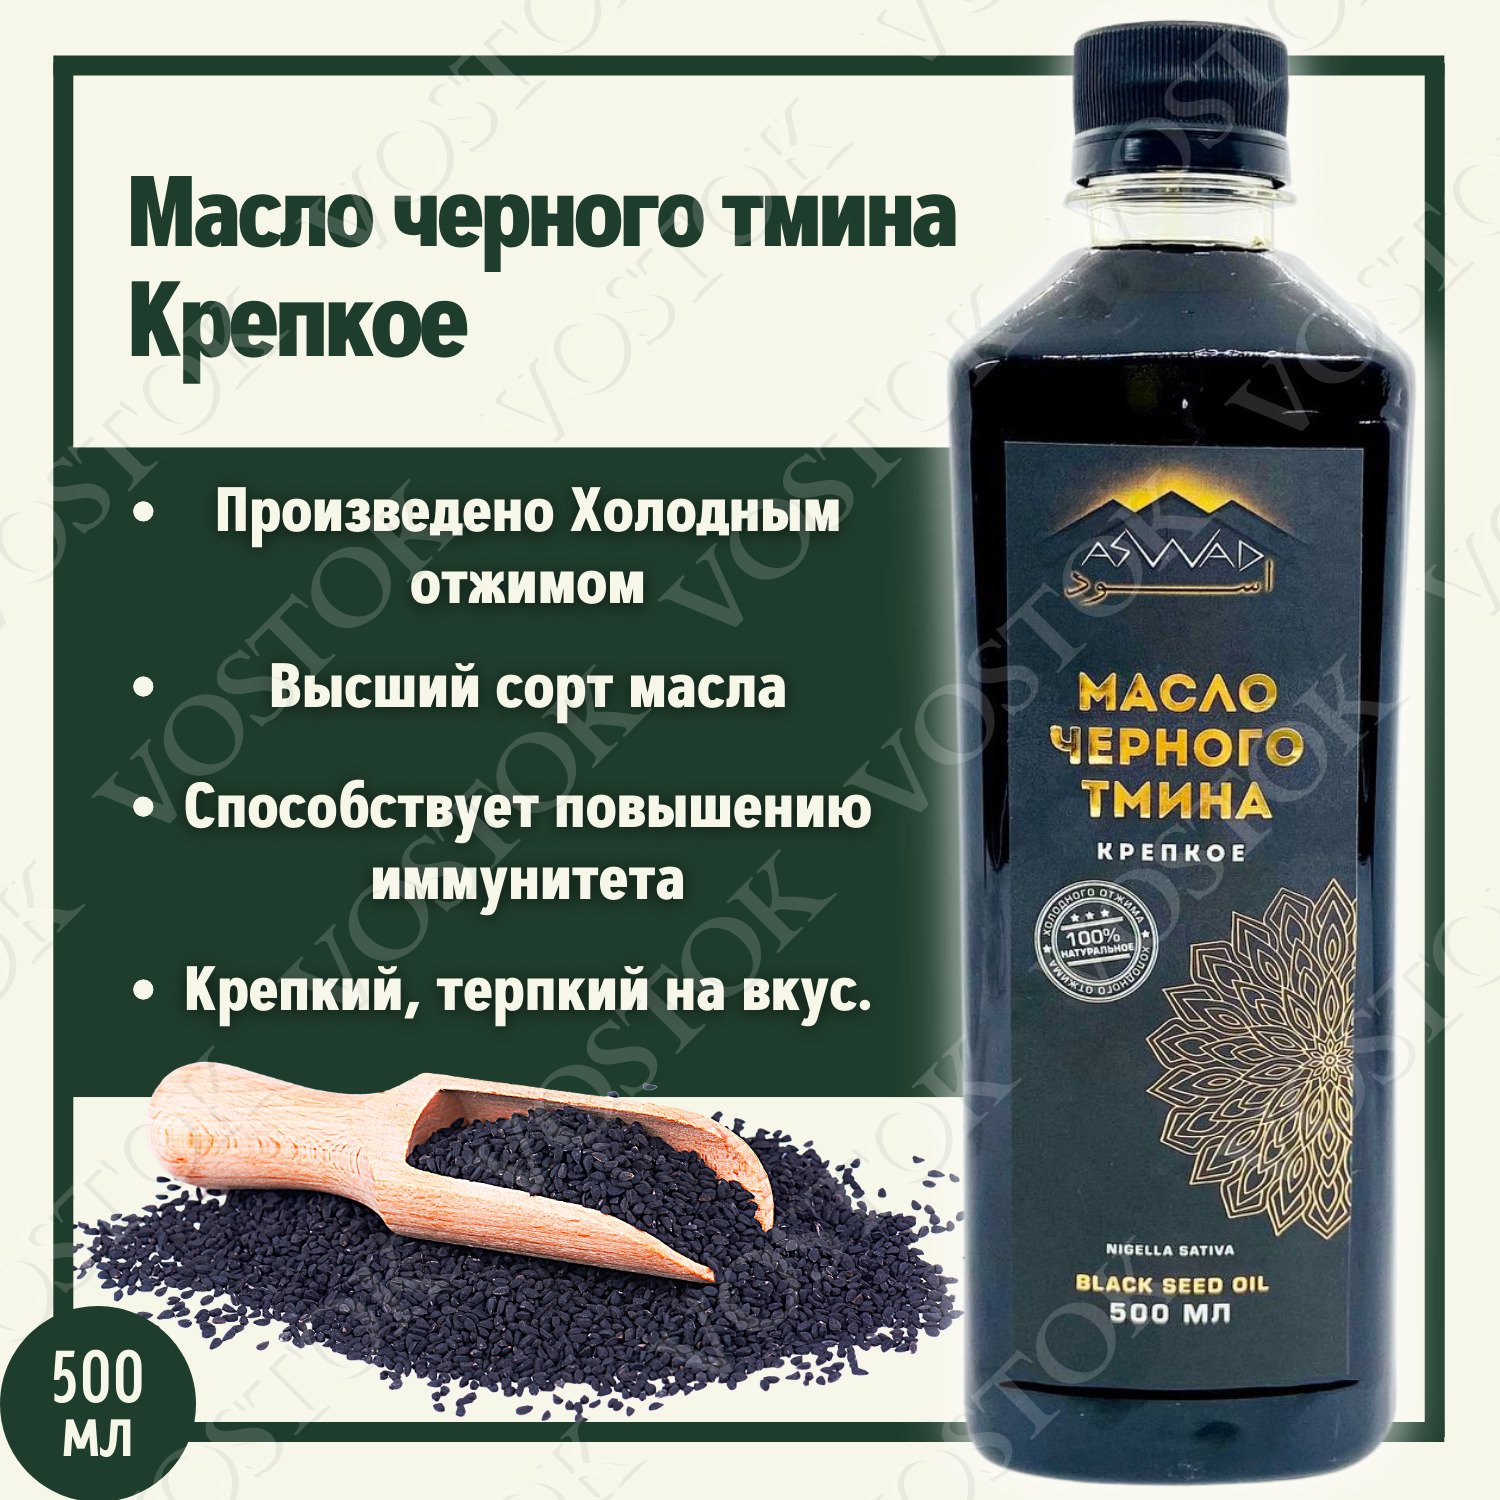 Производство масла черного тмина